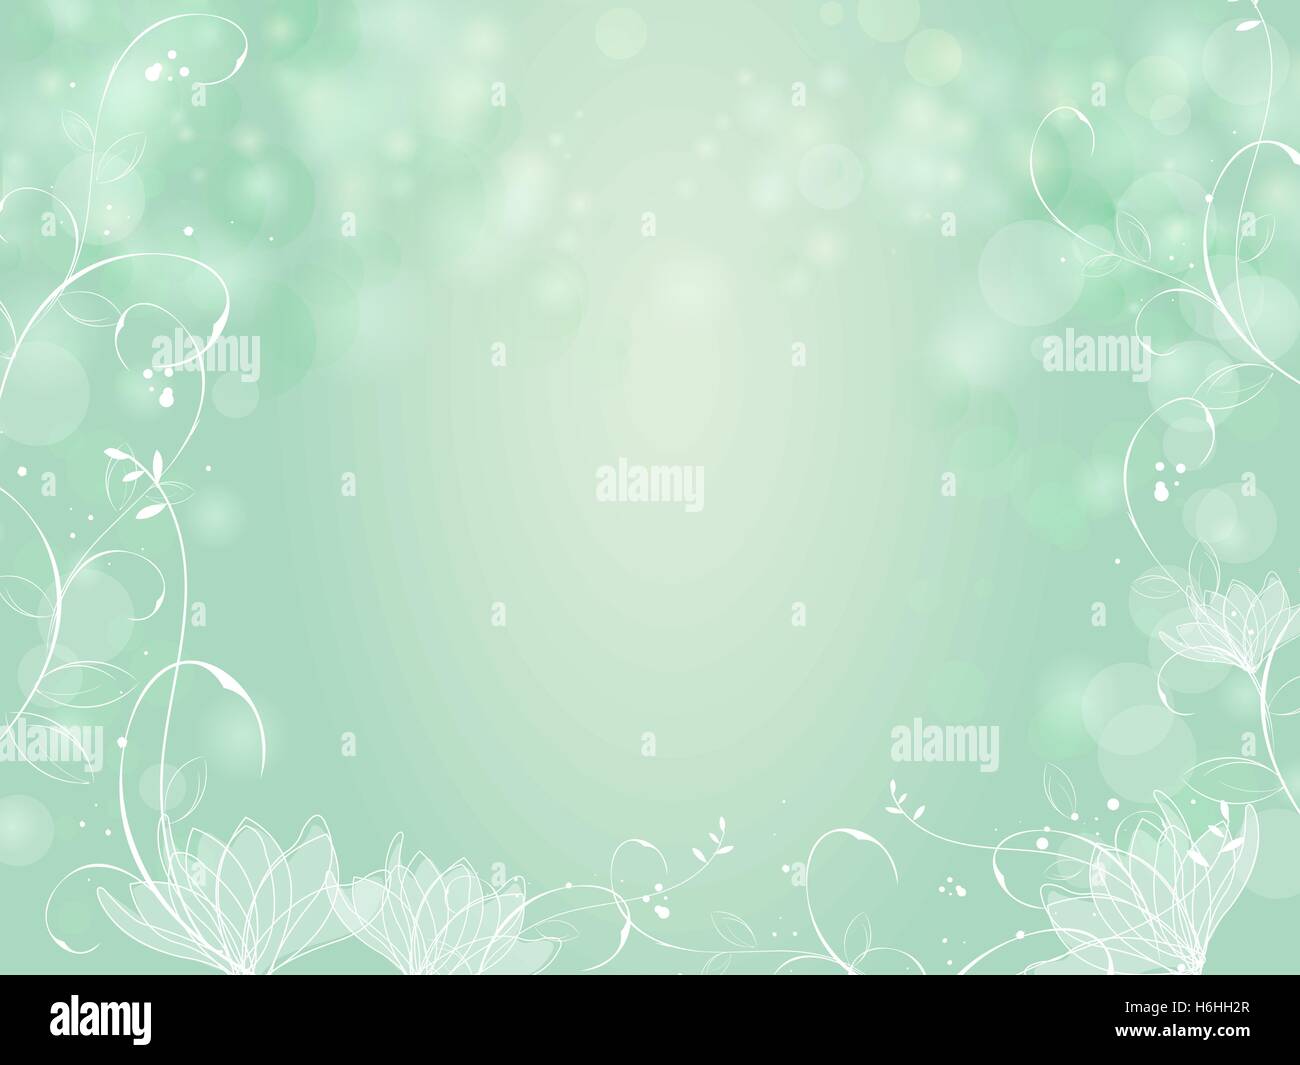 Farbverlauf grün Bokeh Hintergrund mit Grenze Lotus und Pflanzen Stock Vektor